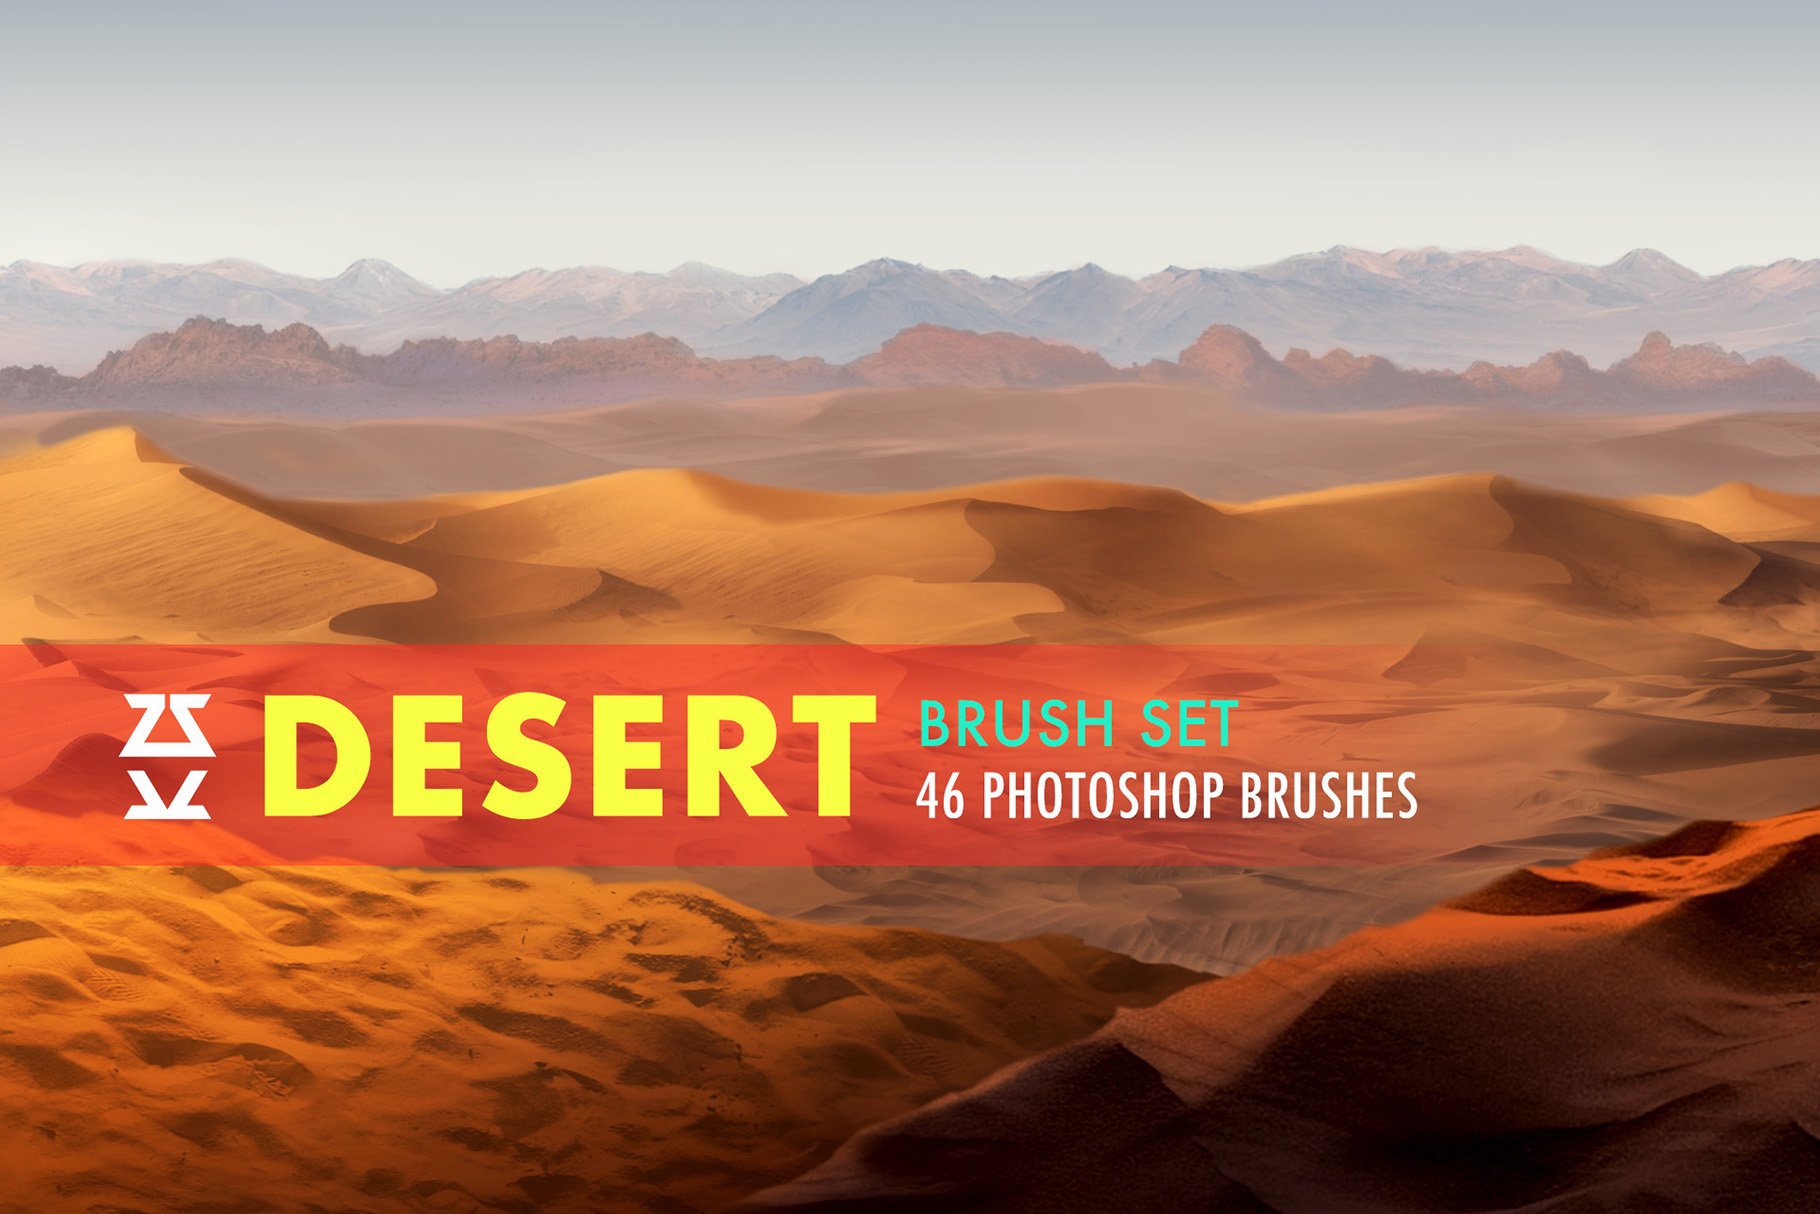 Desert Brush Setcover image.